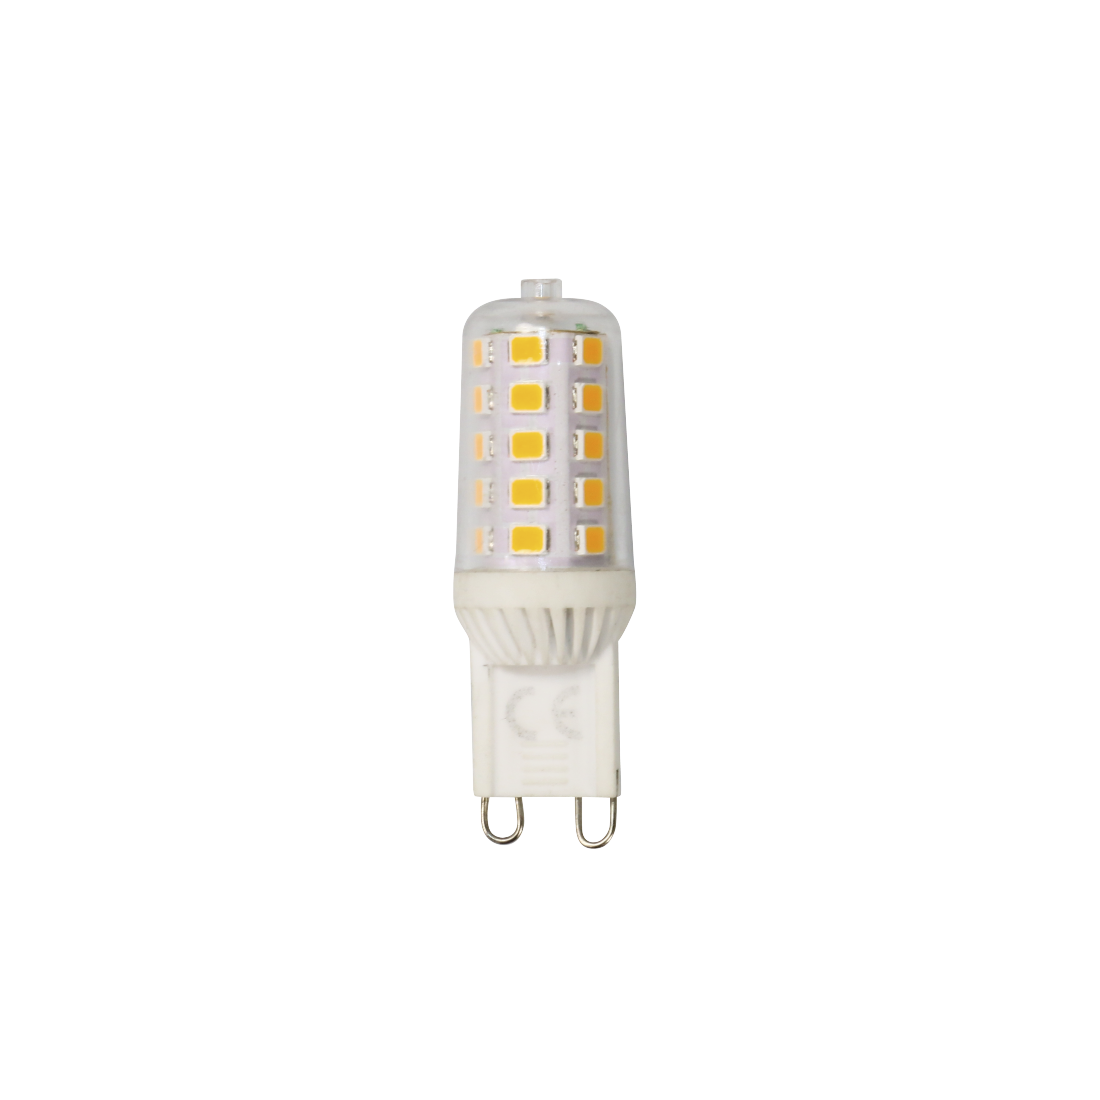 abx Druckfähige Abbildung - Xavax, LED-Lampe, G9, 370lm, ersetzt 33W, Stecksockellampe, Warmweiß